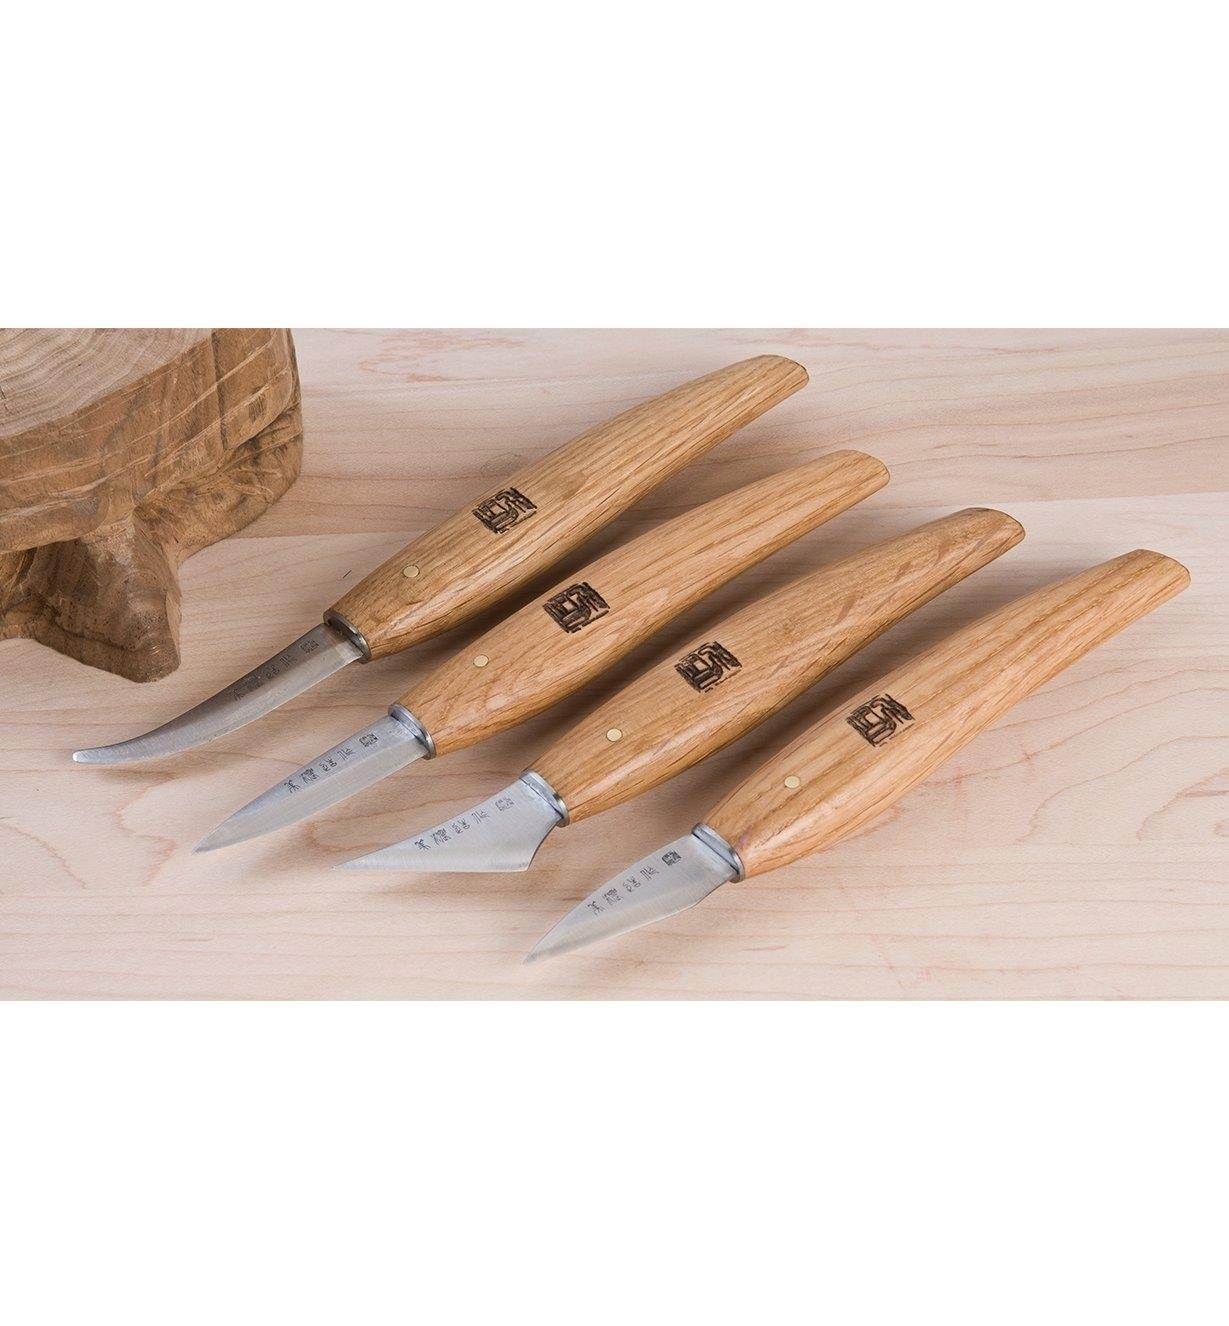 https://assets.leevalley.com/Size4/10065/60D0420-set-of-4-japanese-carving-knives-u-01-r.jpg